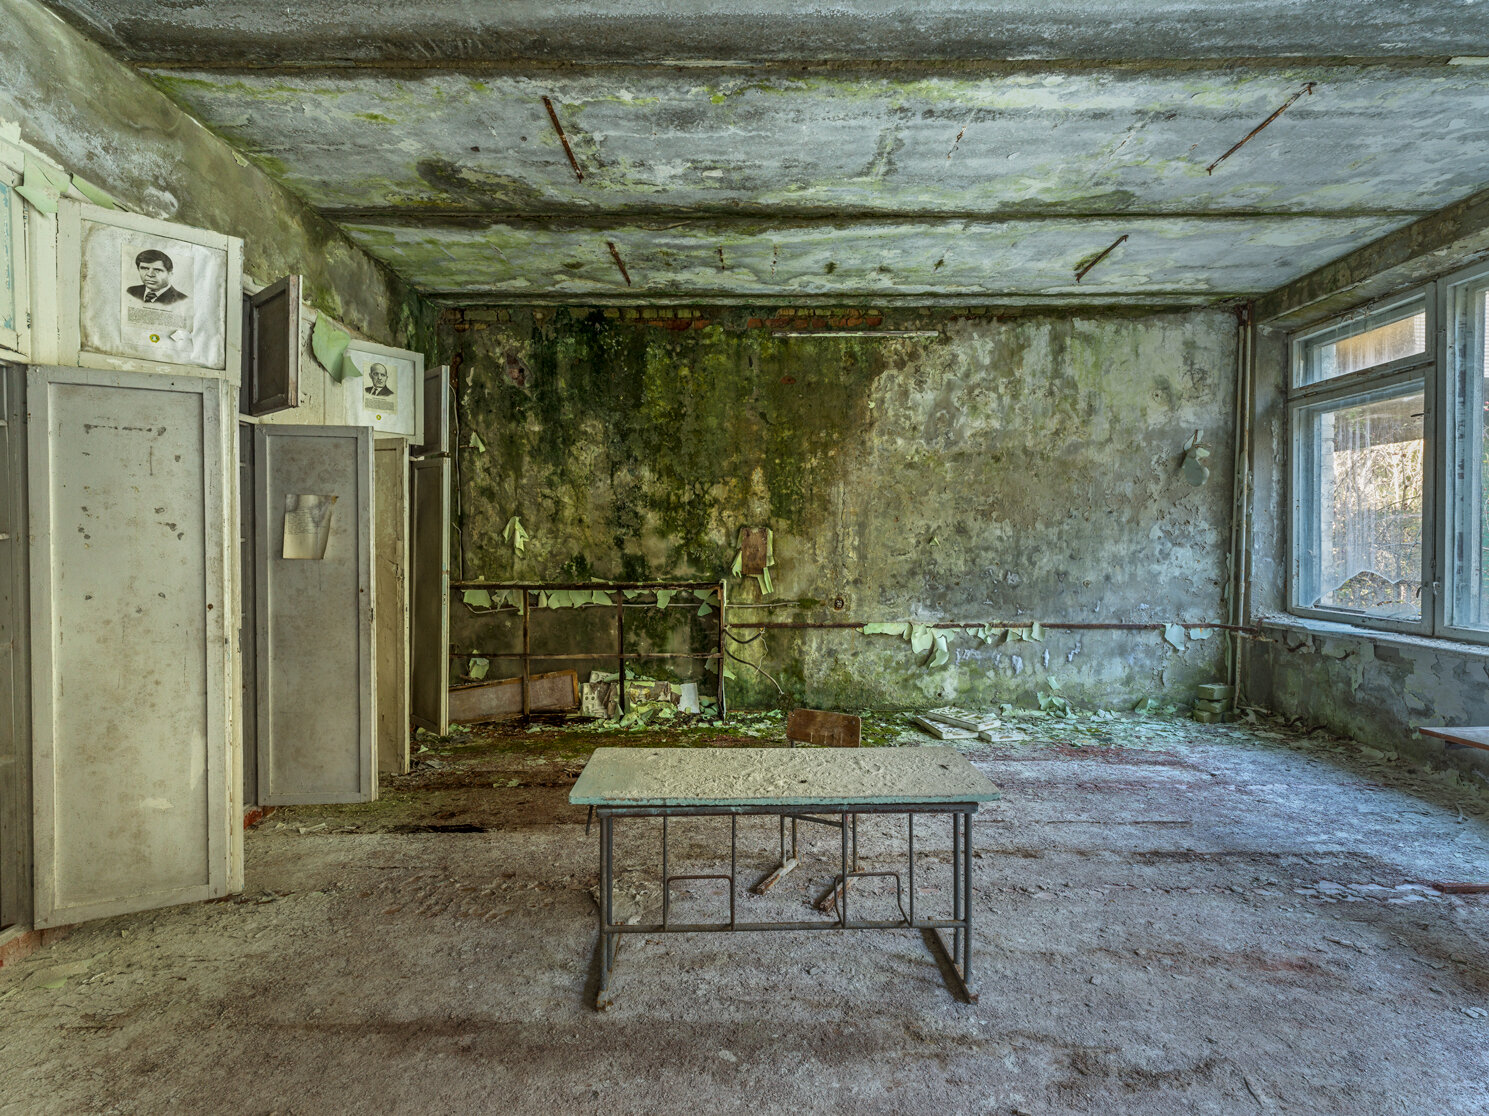 Chernobyl_06.jpg